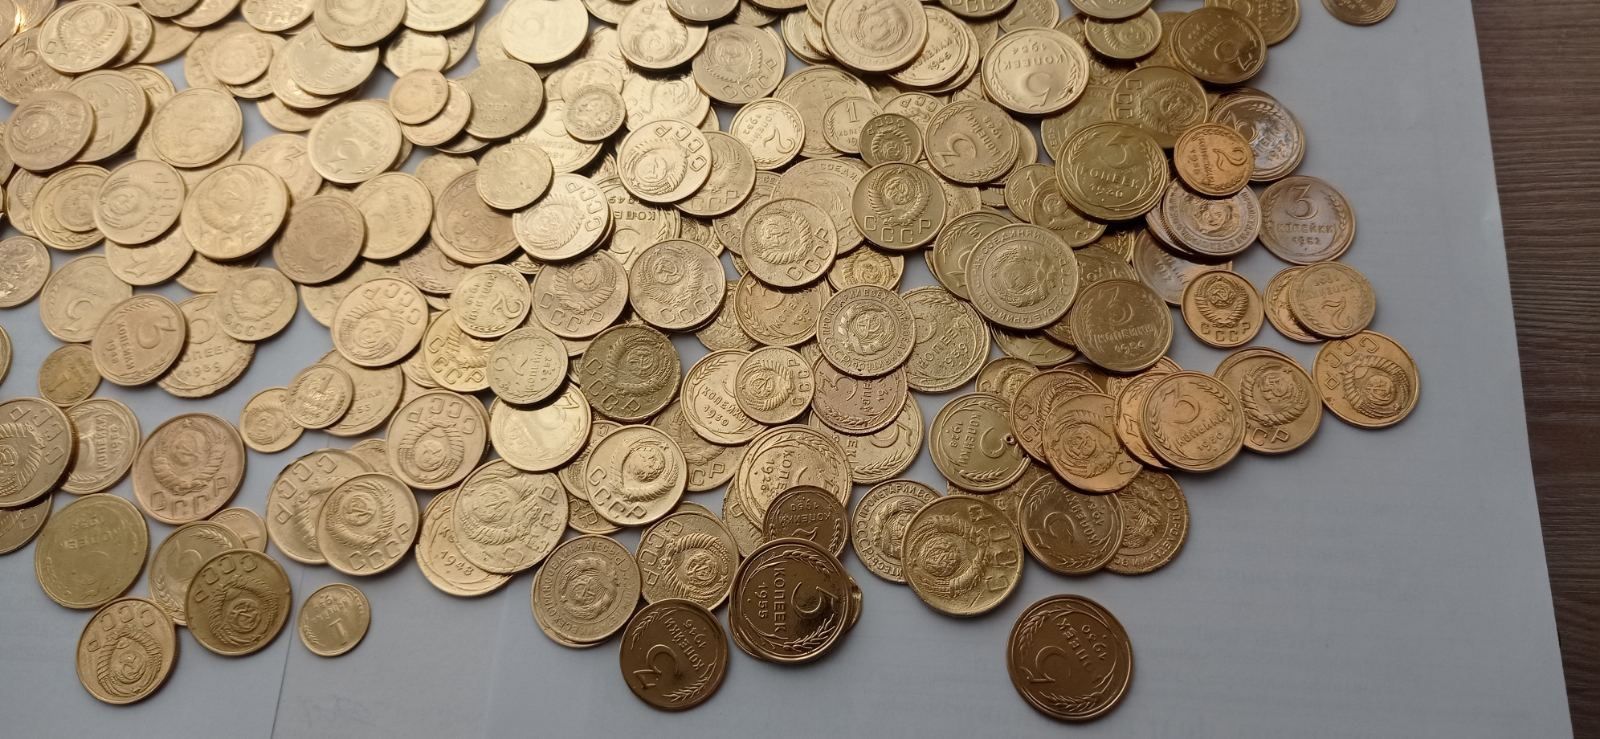 700 монет до реформы.